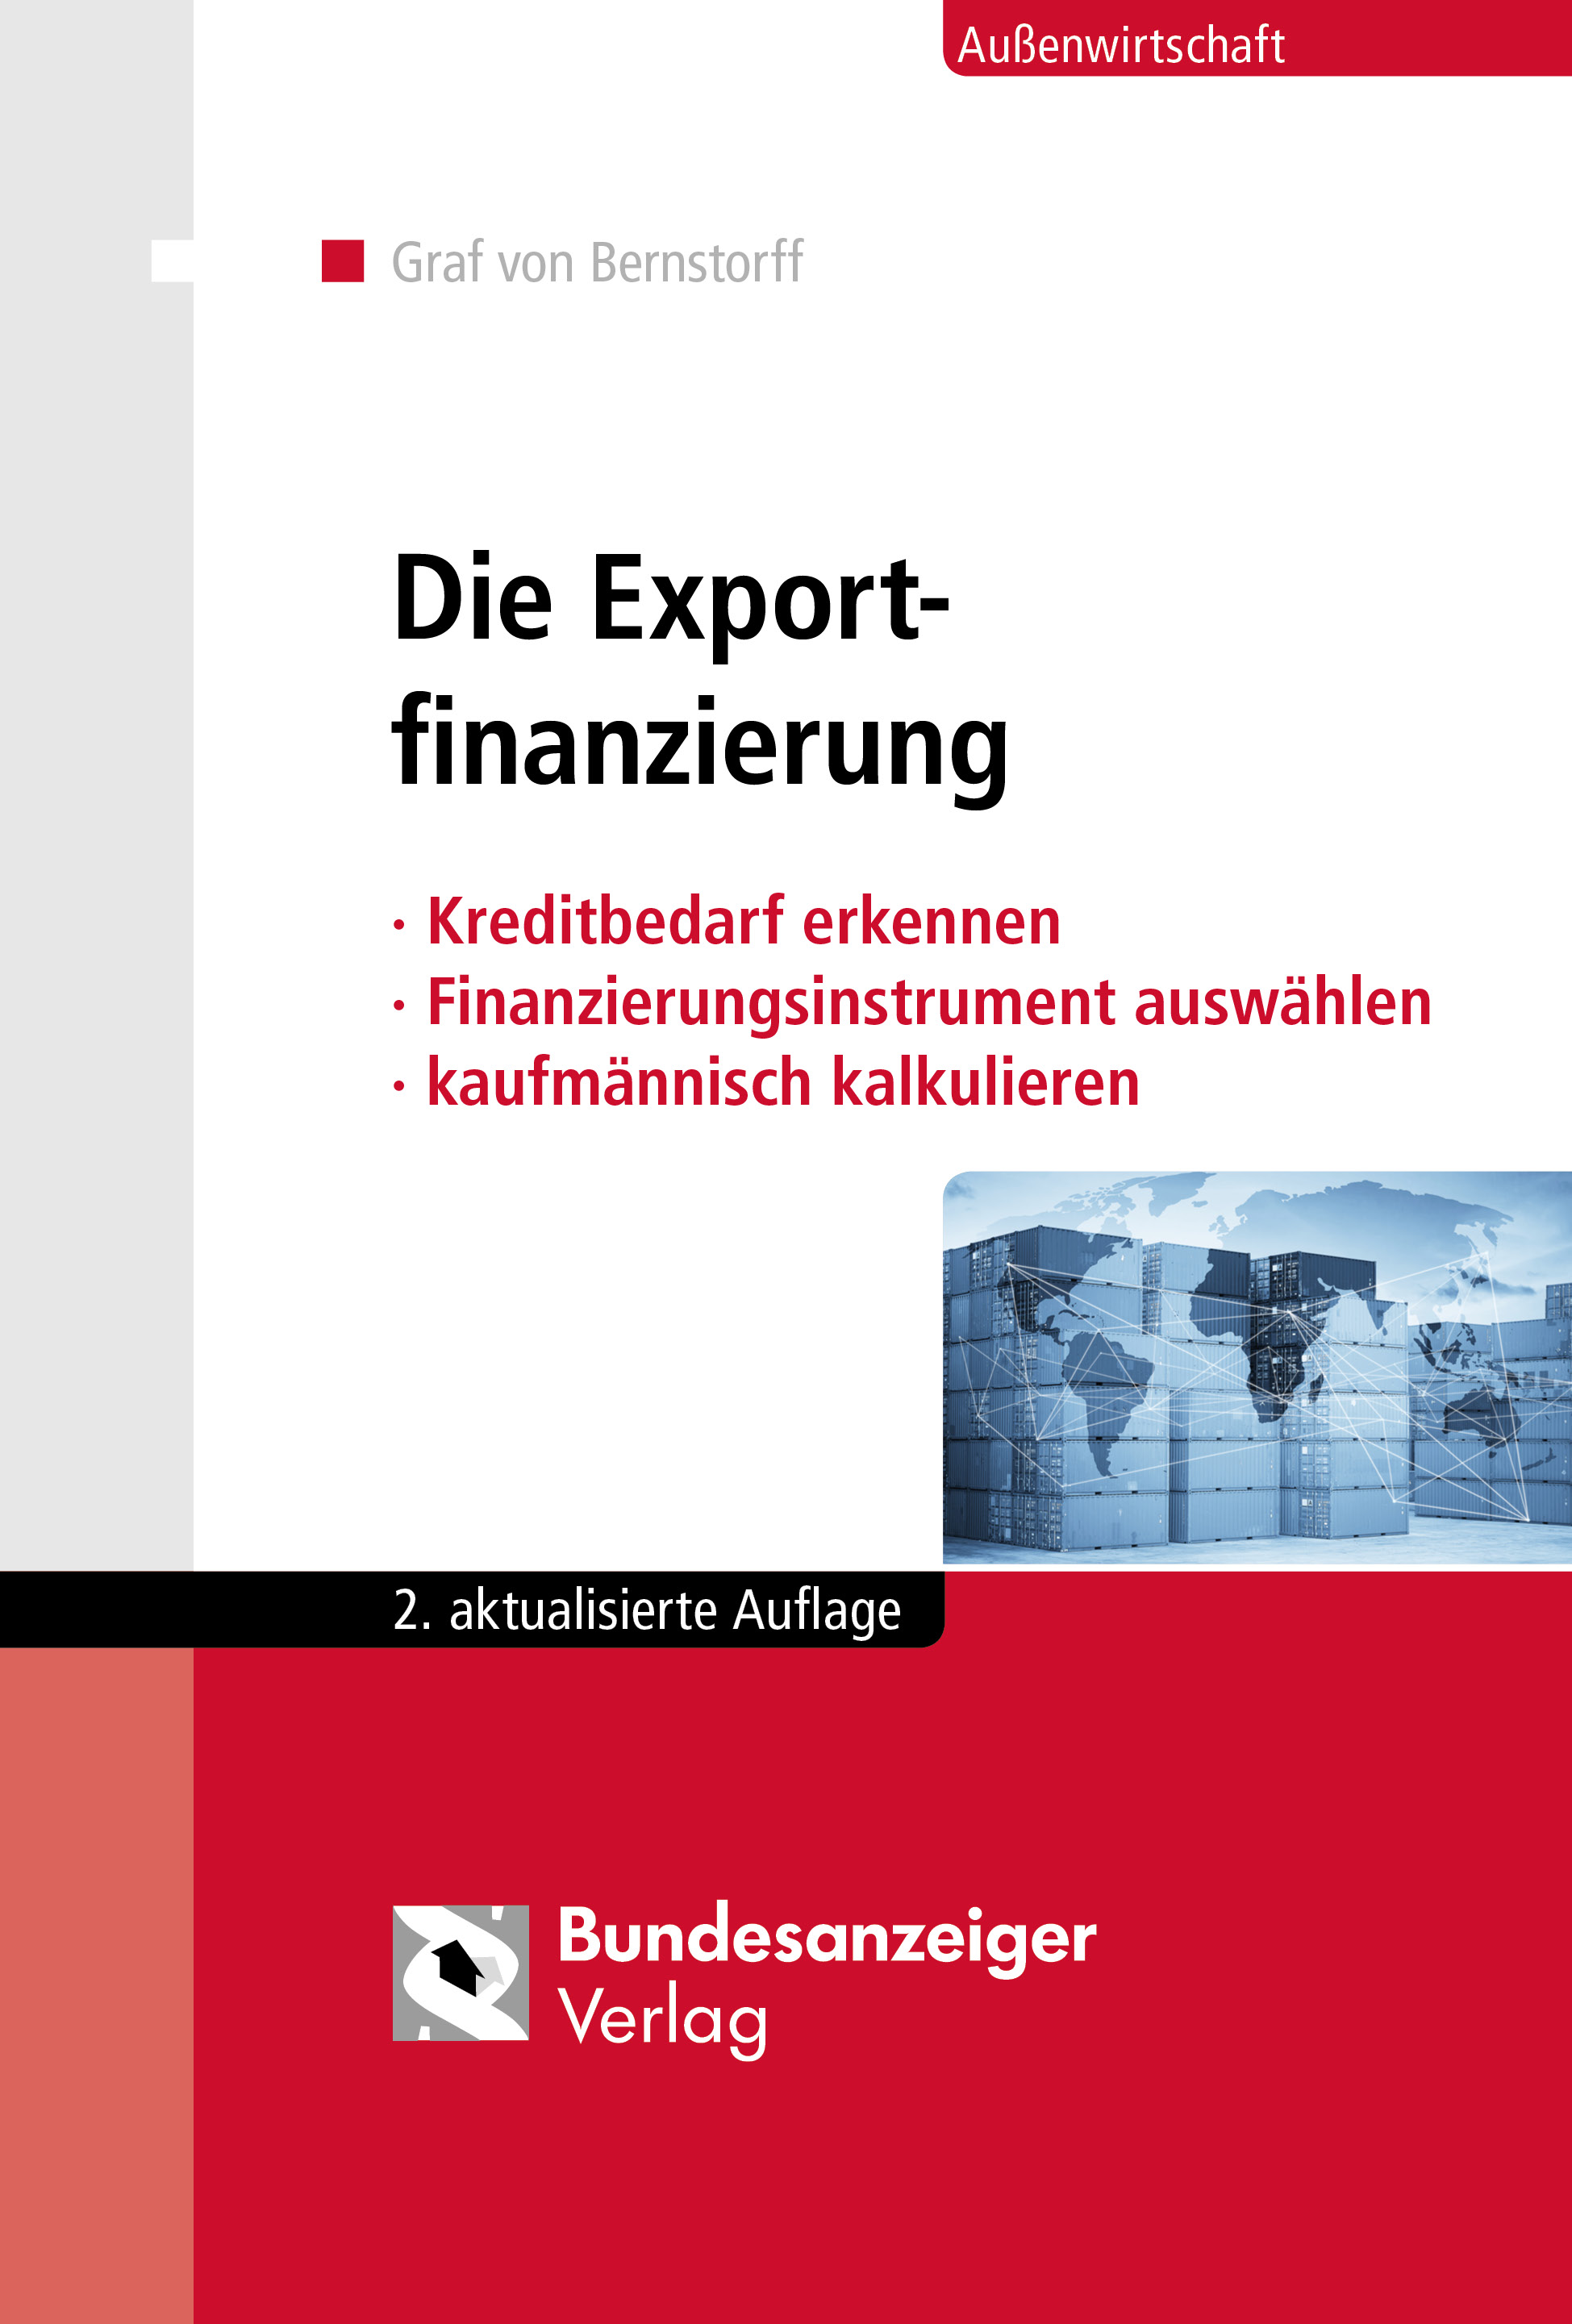 Die Exportfinanzierung